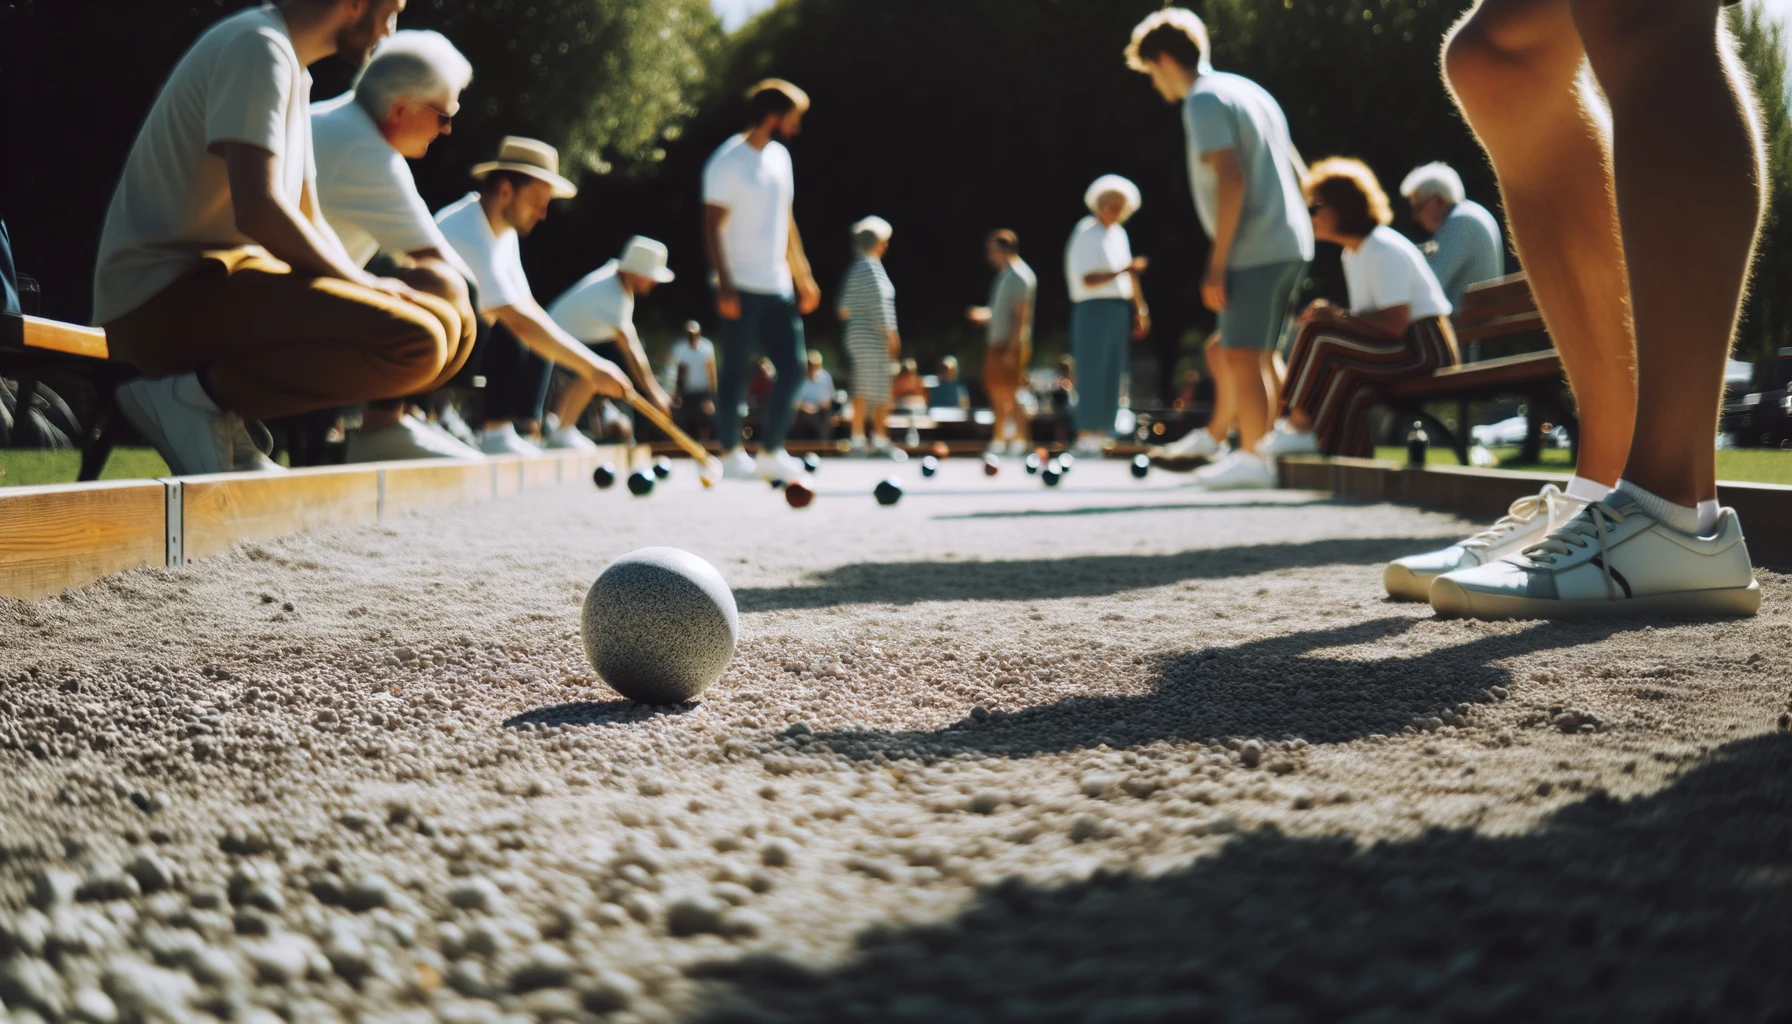 Foto eines sonnigen Tages in einem Park, in dem eine bunte Gruppe von Menschen Boccia spielt. Der Boden ist mit feinem Kies bedeckt, und die kleine weiße Zielkugel ist sichtbar.